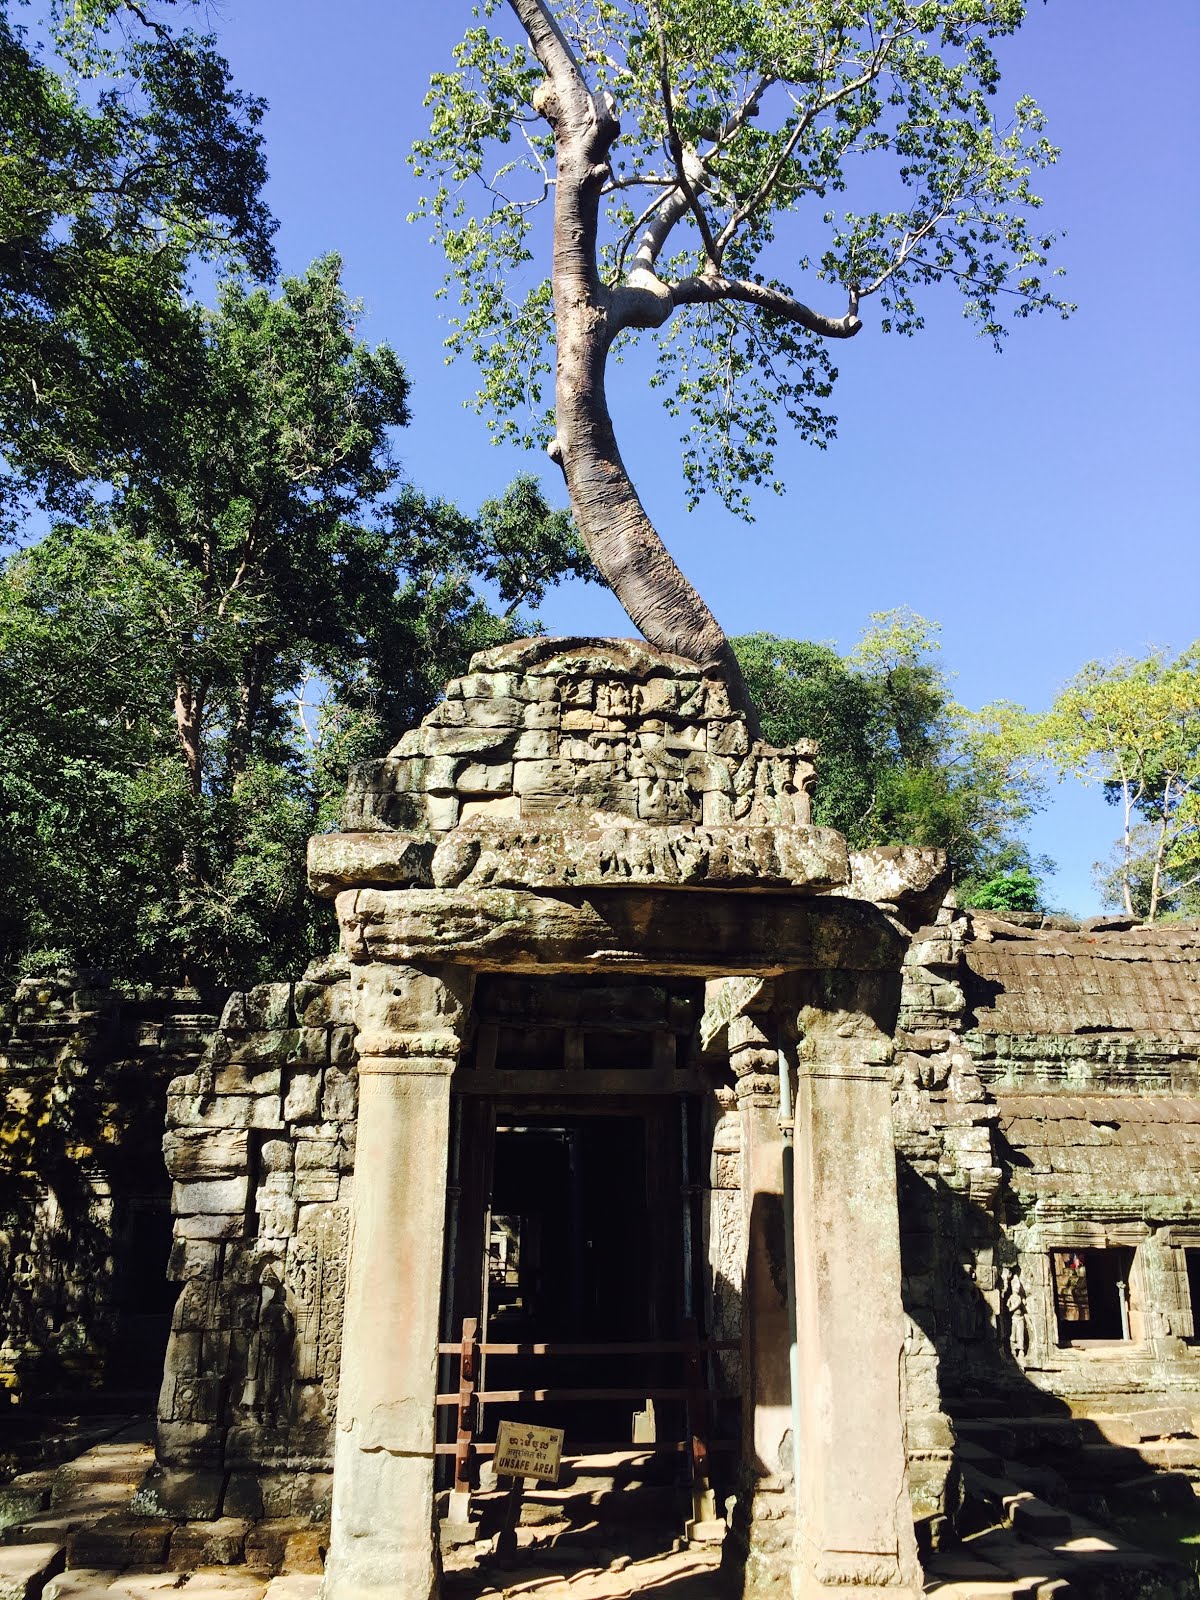 Temple Ruins in Cambodia